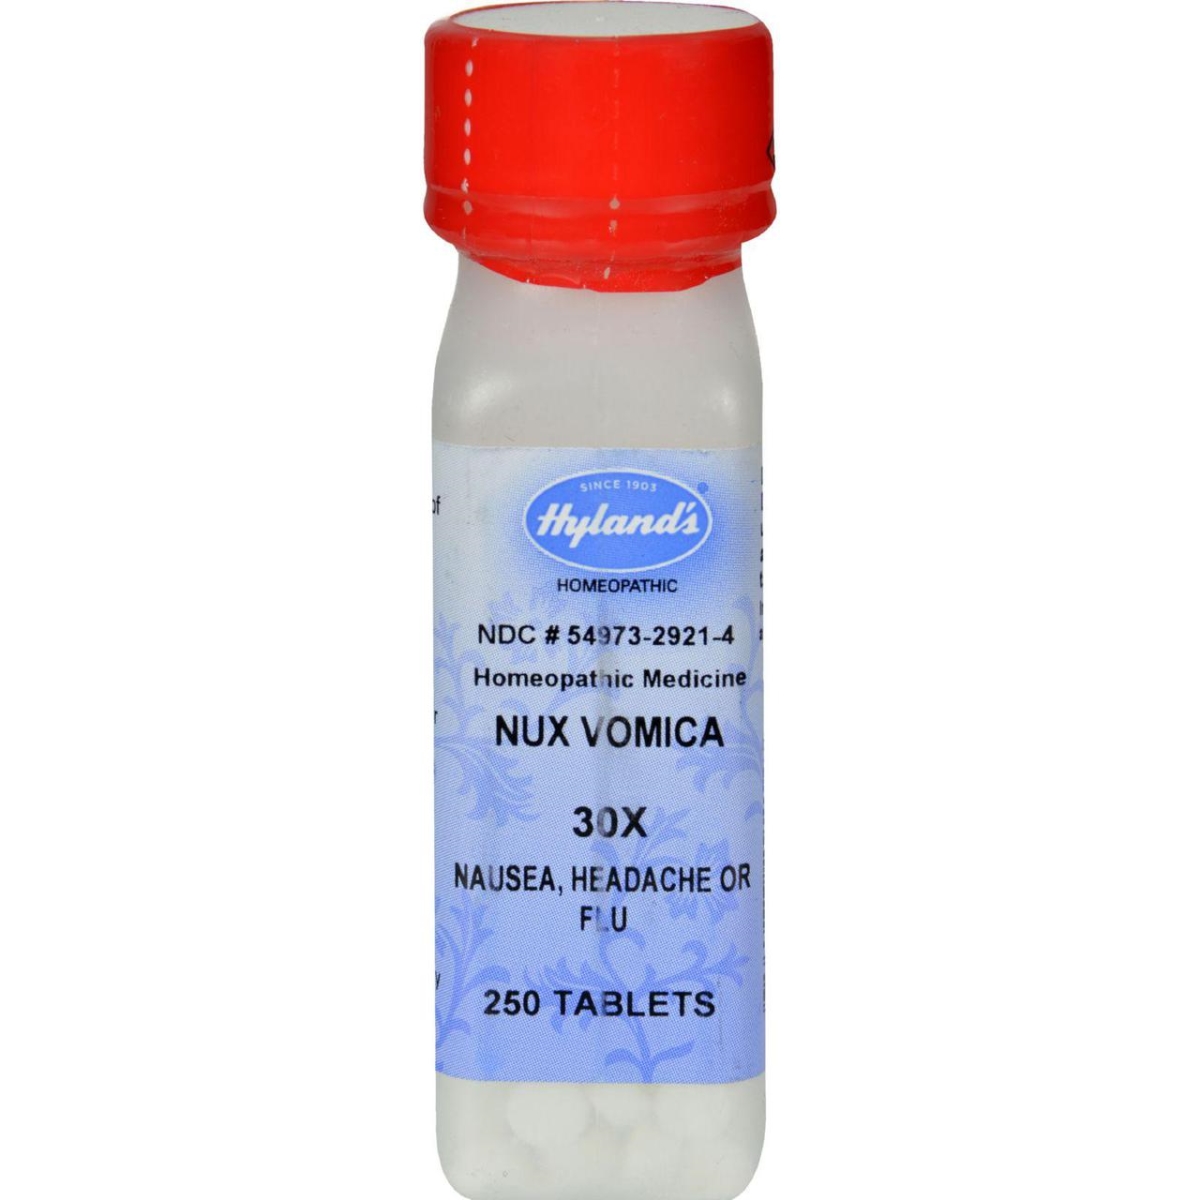 Hg0130468 Nux Vomica 30x, 250 Tablets